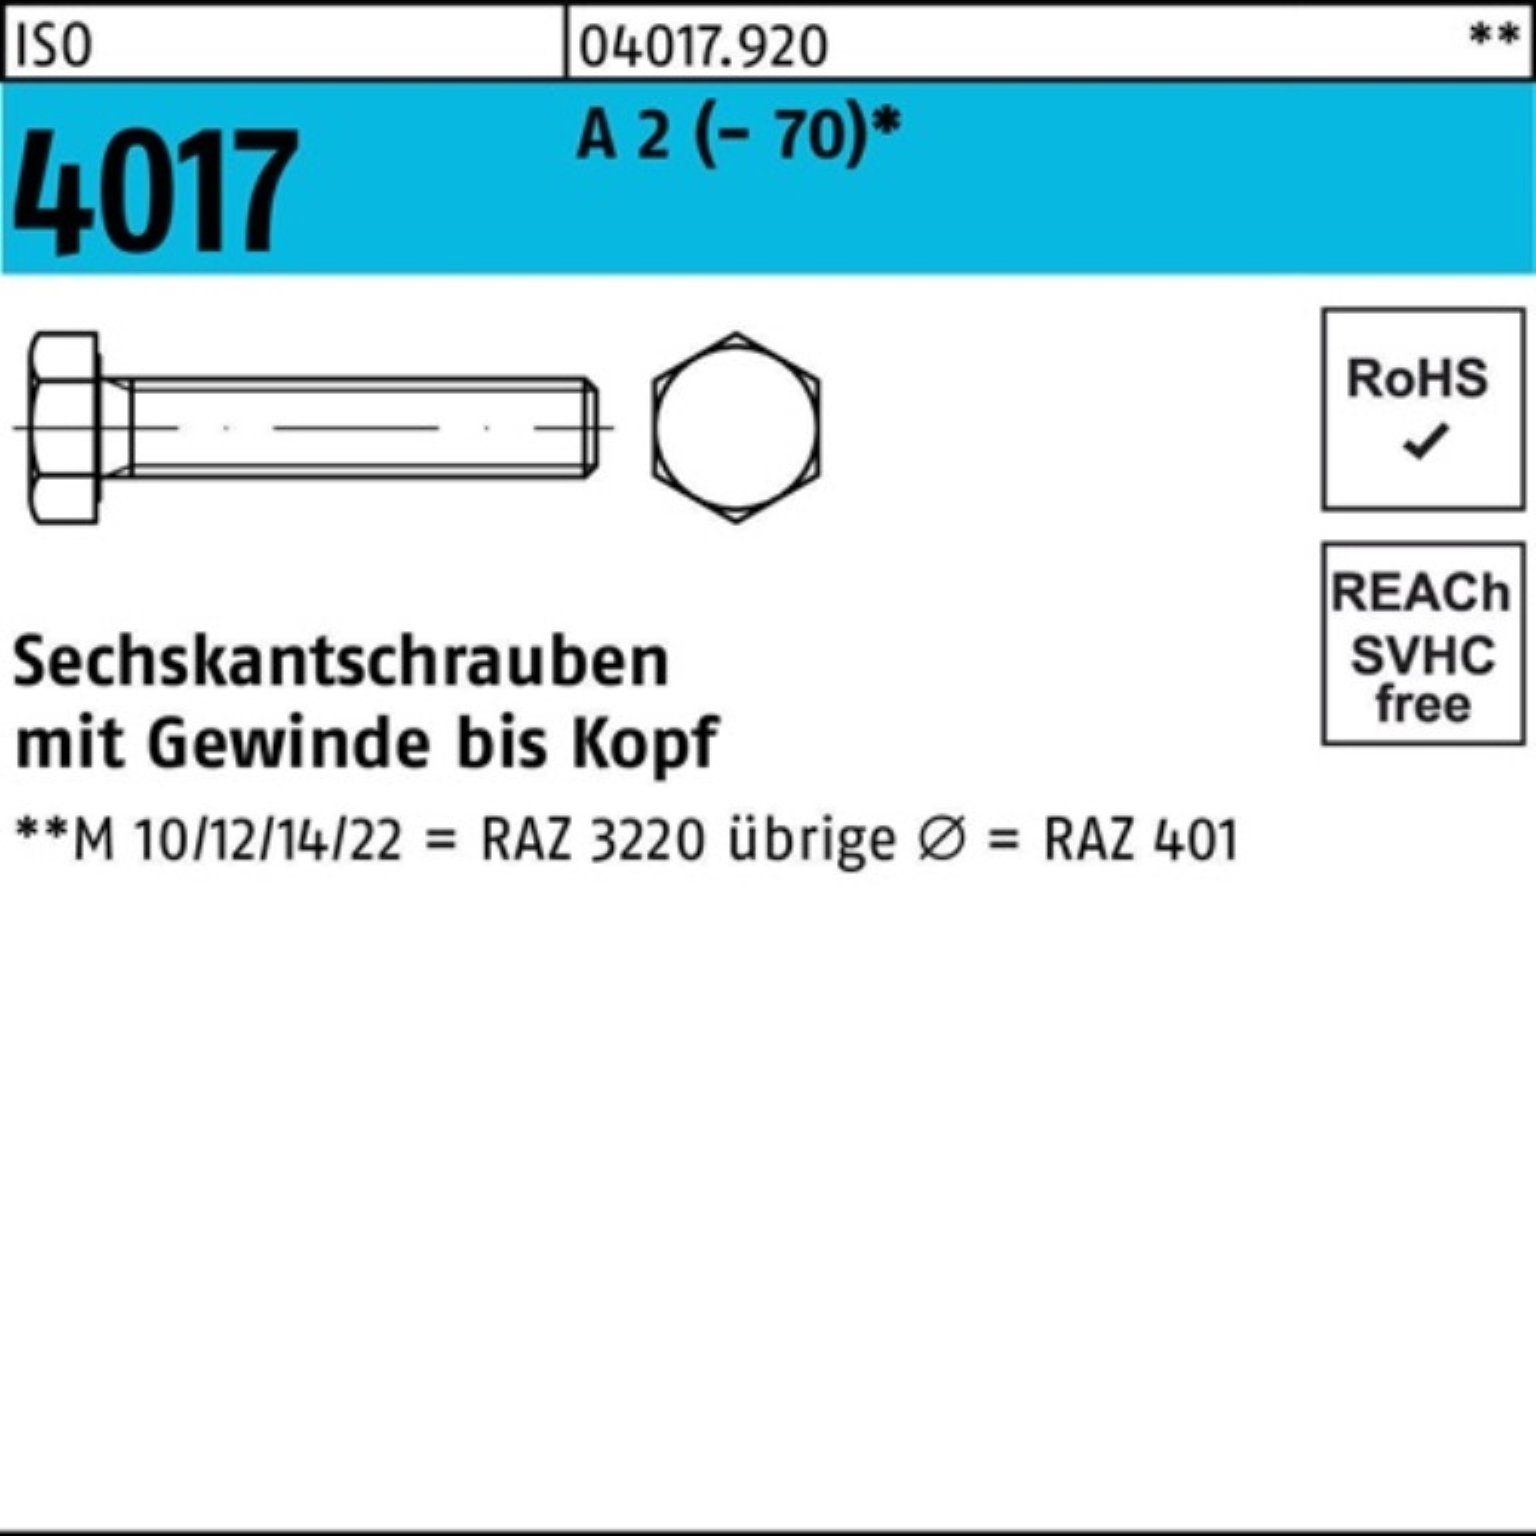 A 65 ISO VG M20x Pack 4017 25 100er Bufab Sechskantschraube Sechskantschraube 2 (70) Stück